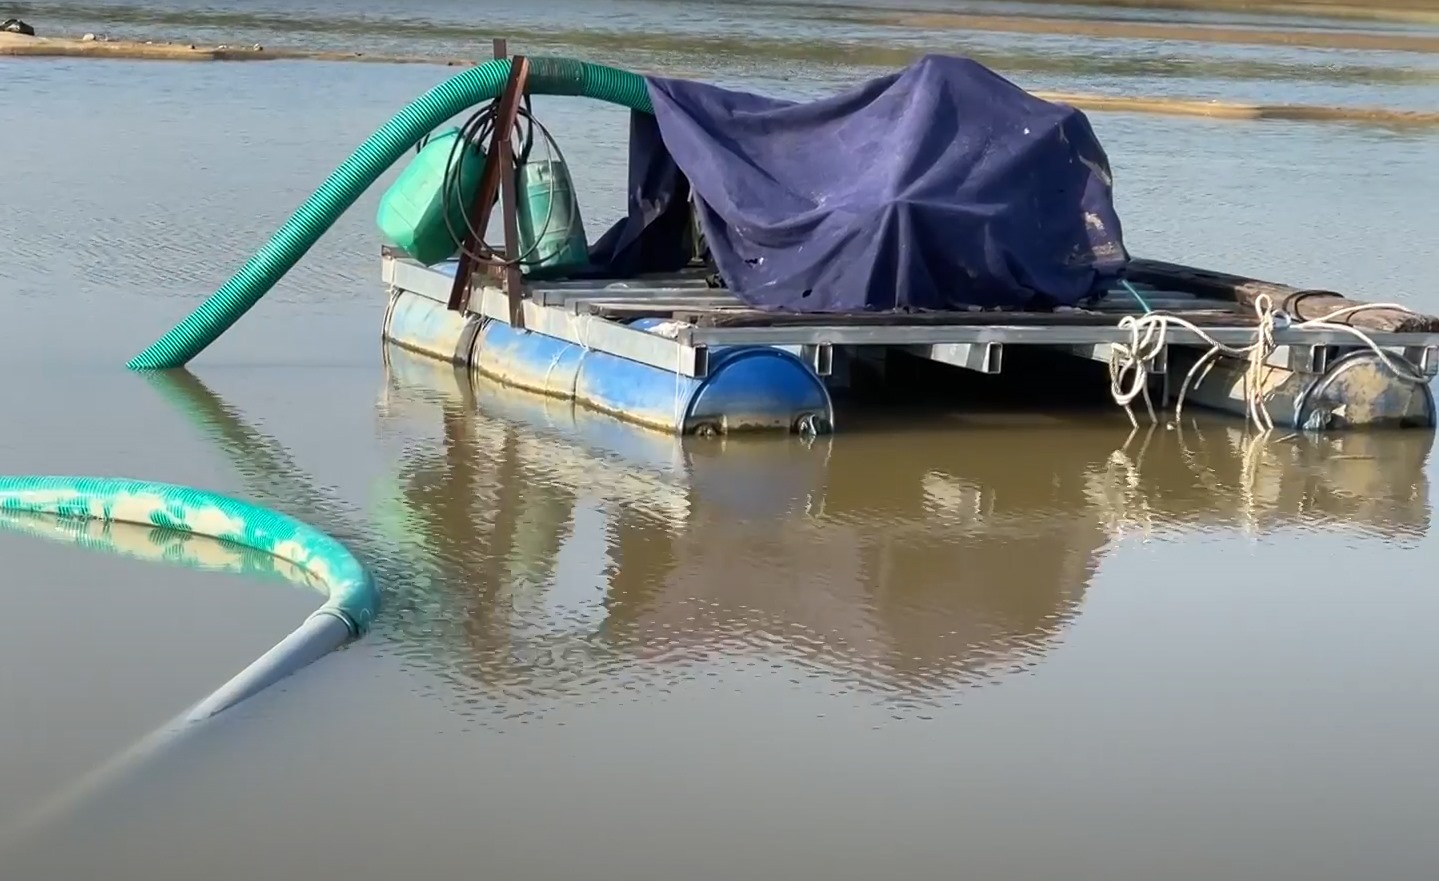 Máy móc cát tặc sử dụng để hút cát trái phép trên sông Trà Khúc. Ảnh: Ngọc Viên